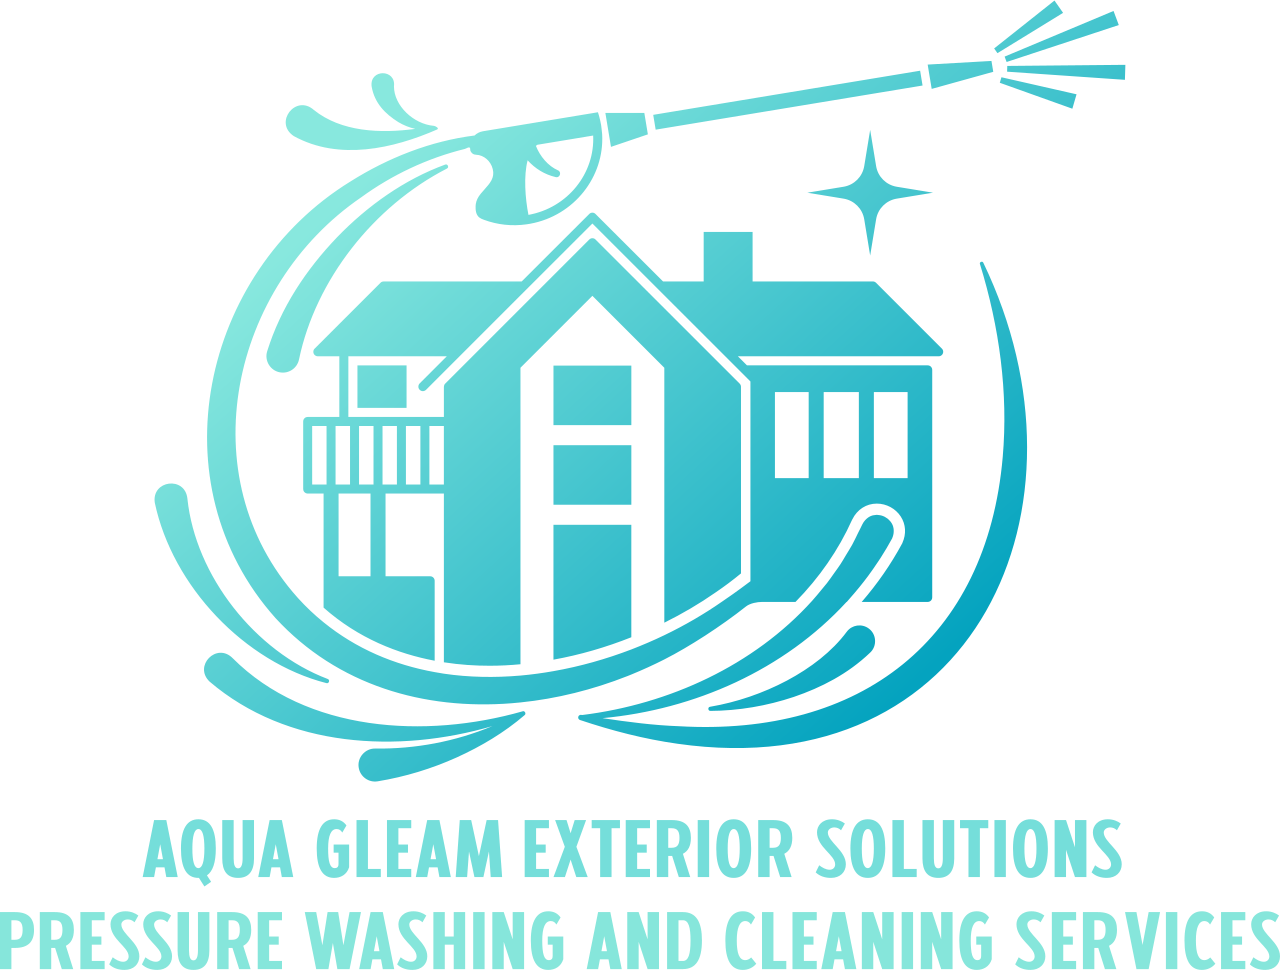 Aqua Gleam Exterior Solutions 's logo